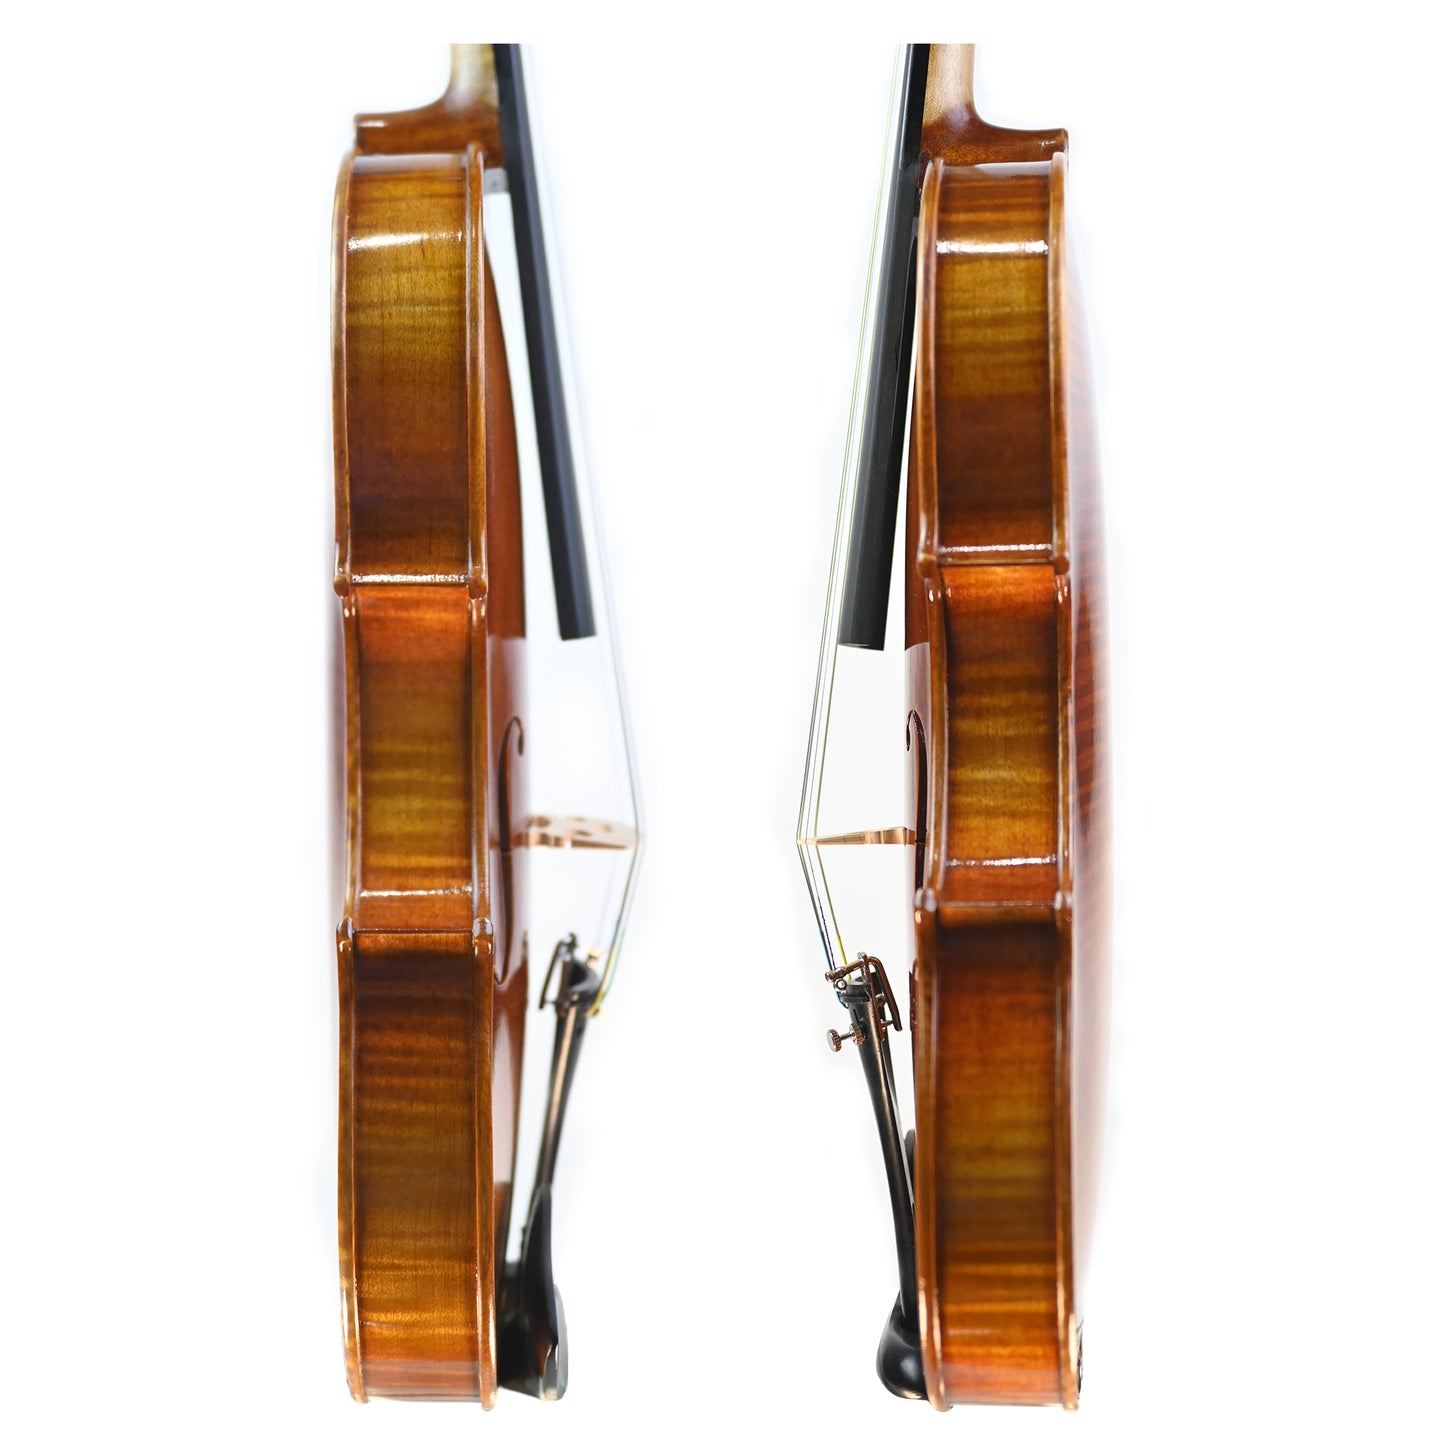 7009 beginner violin ribs